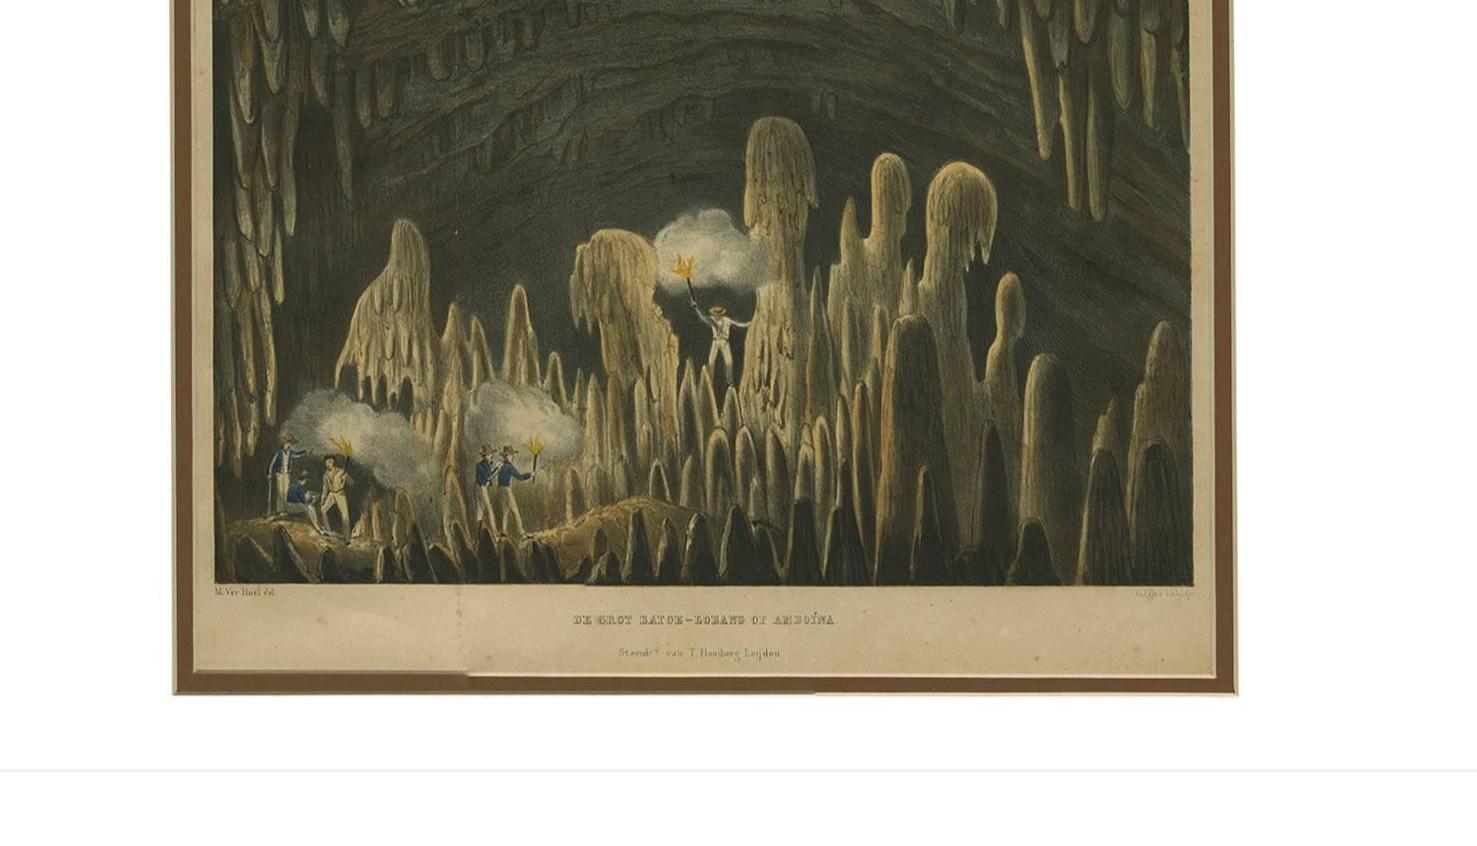 This print is titled: 'De grot Batoe-Lobang op Amboina' and is based on a drawing of M. Ver Huel. It originates from Reinwardt's 'Reis naar het Oostelijk gedeelte van den Indischen Archipel.